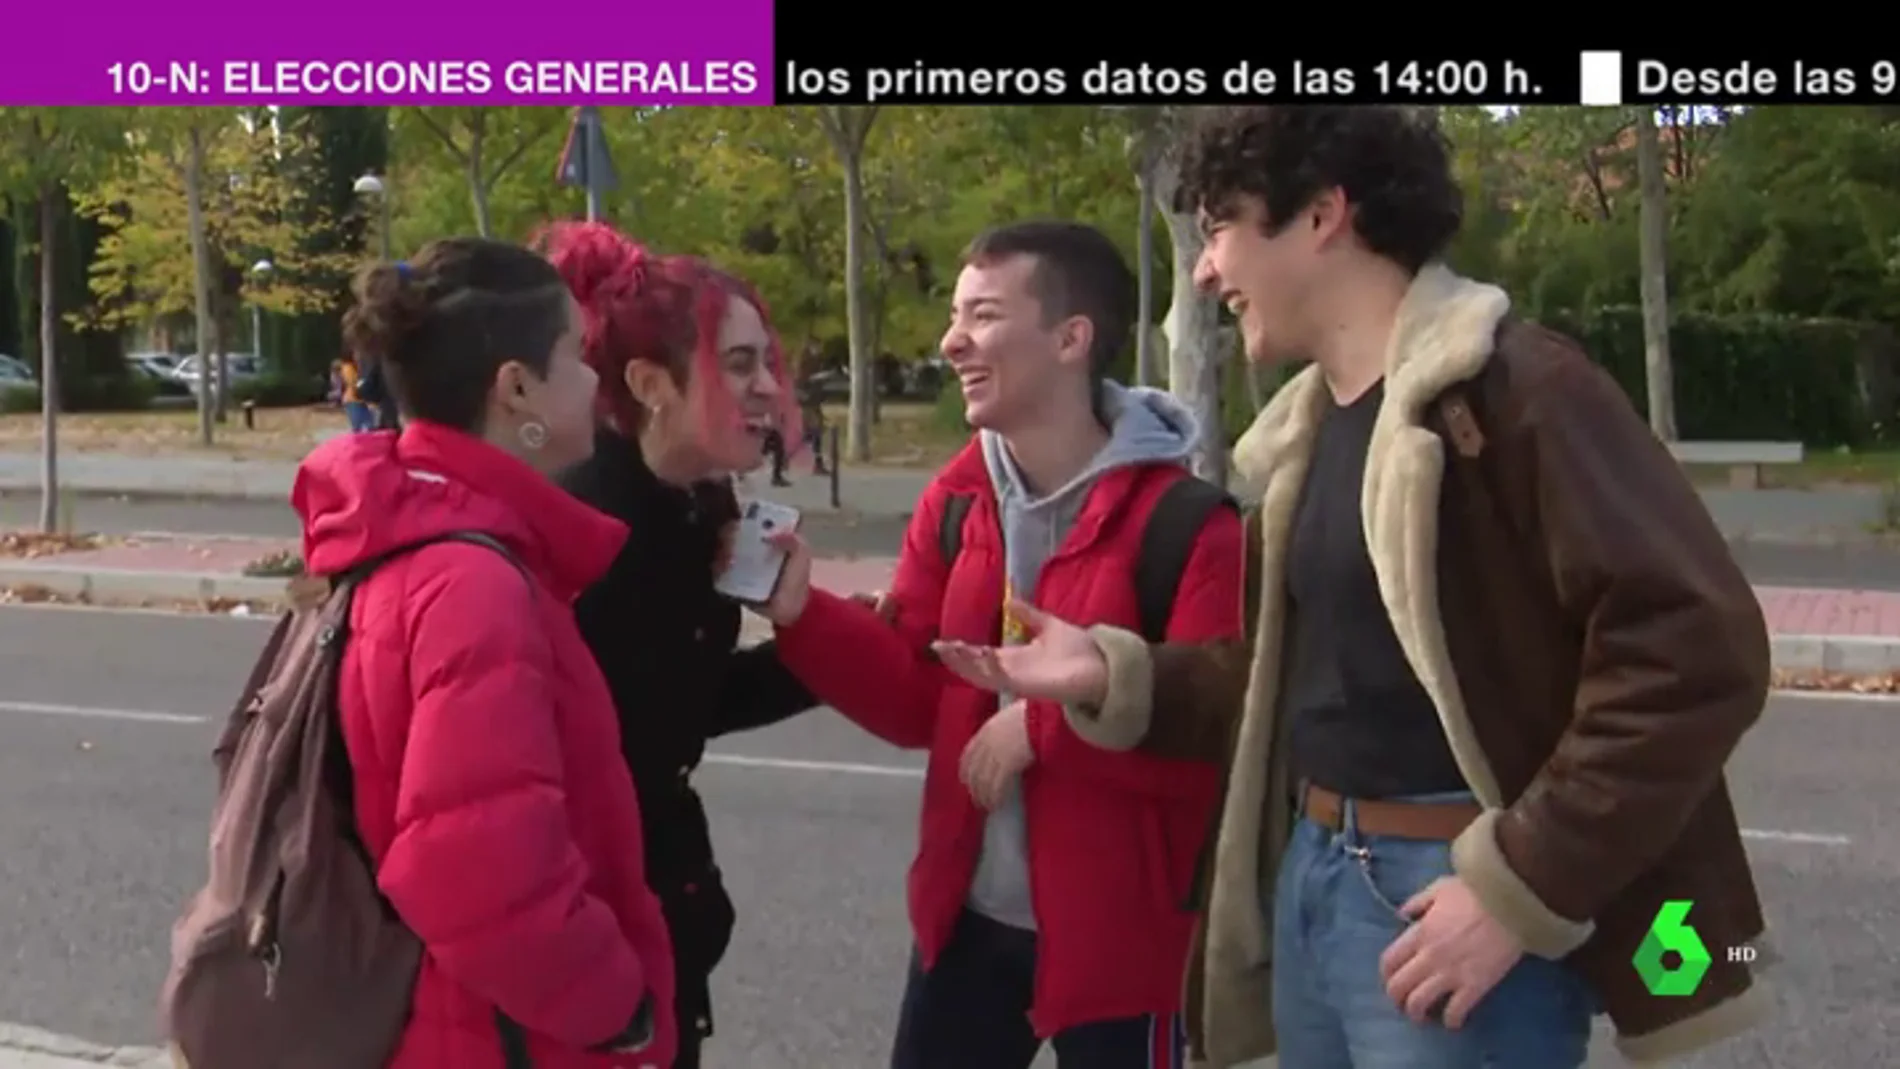 Analizamos el perfil de los 200.000 jóvenes españoles que se estrenan en las elecciones del 10N: ¿a quién y cómo votan?